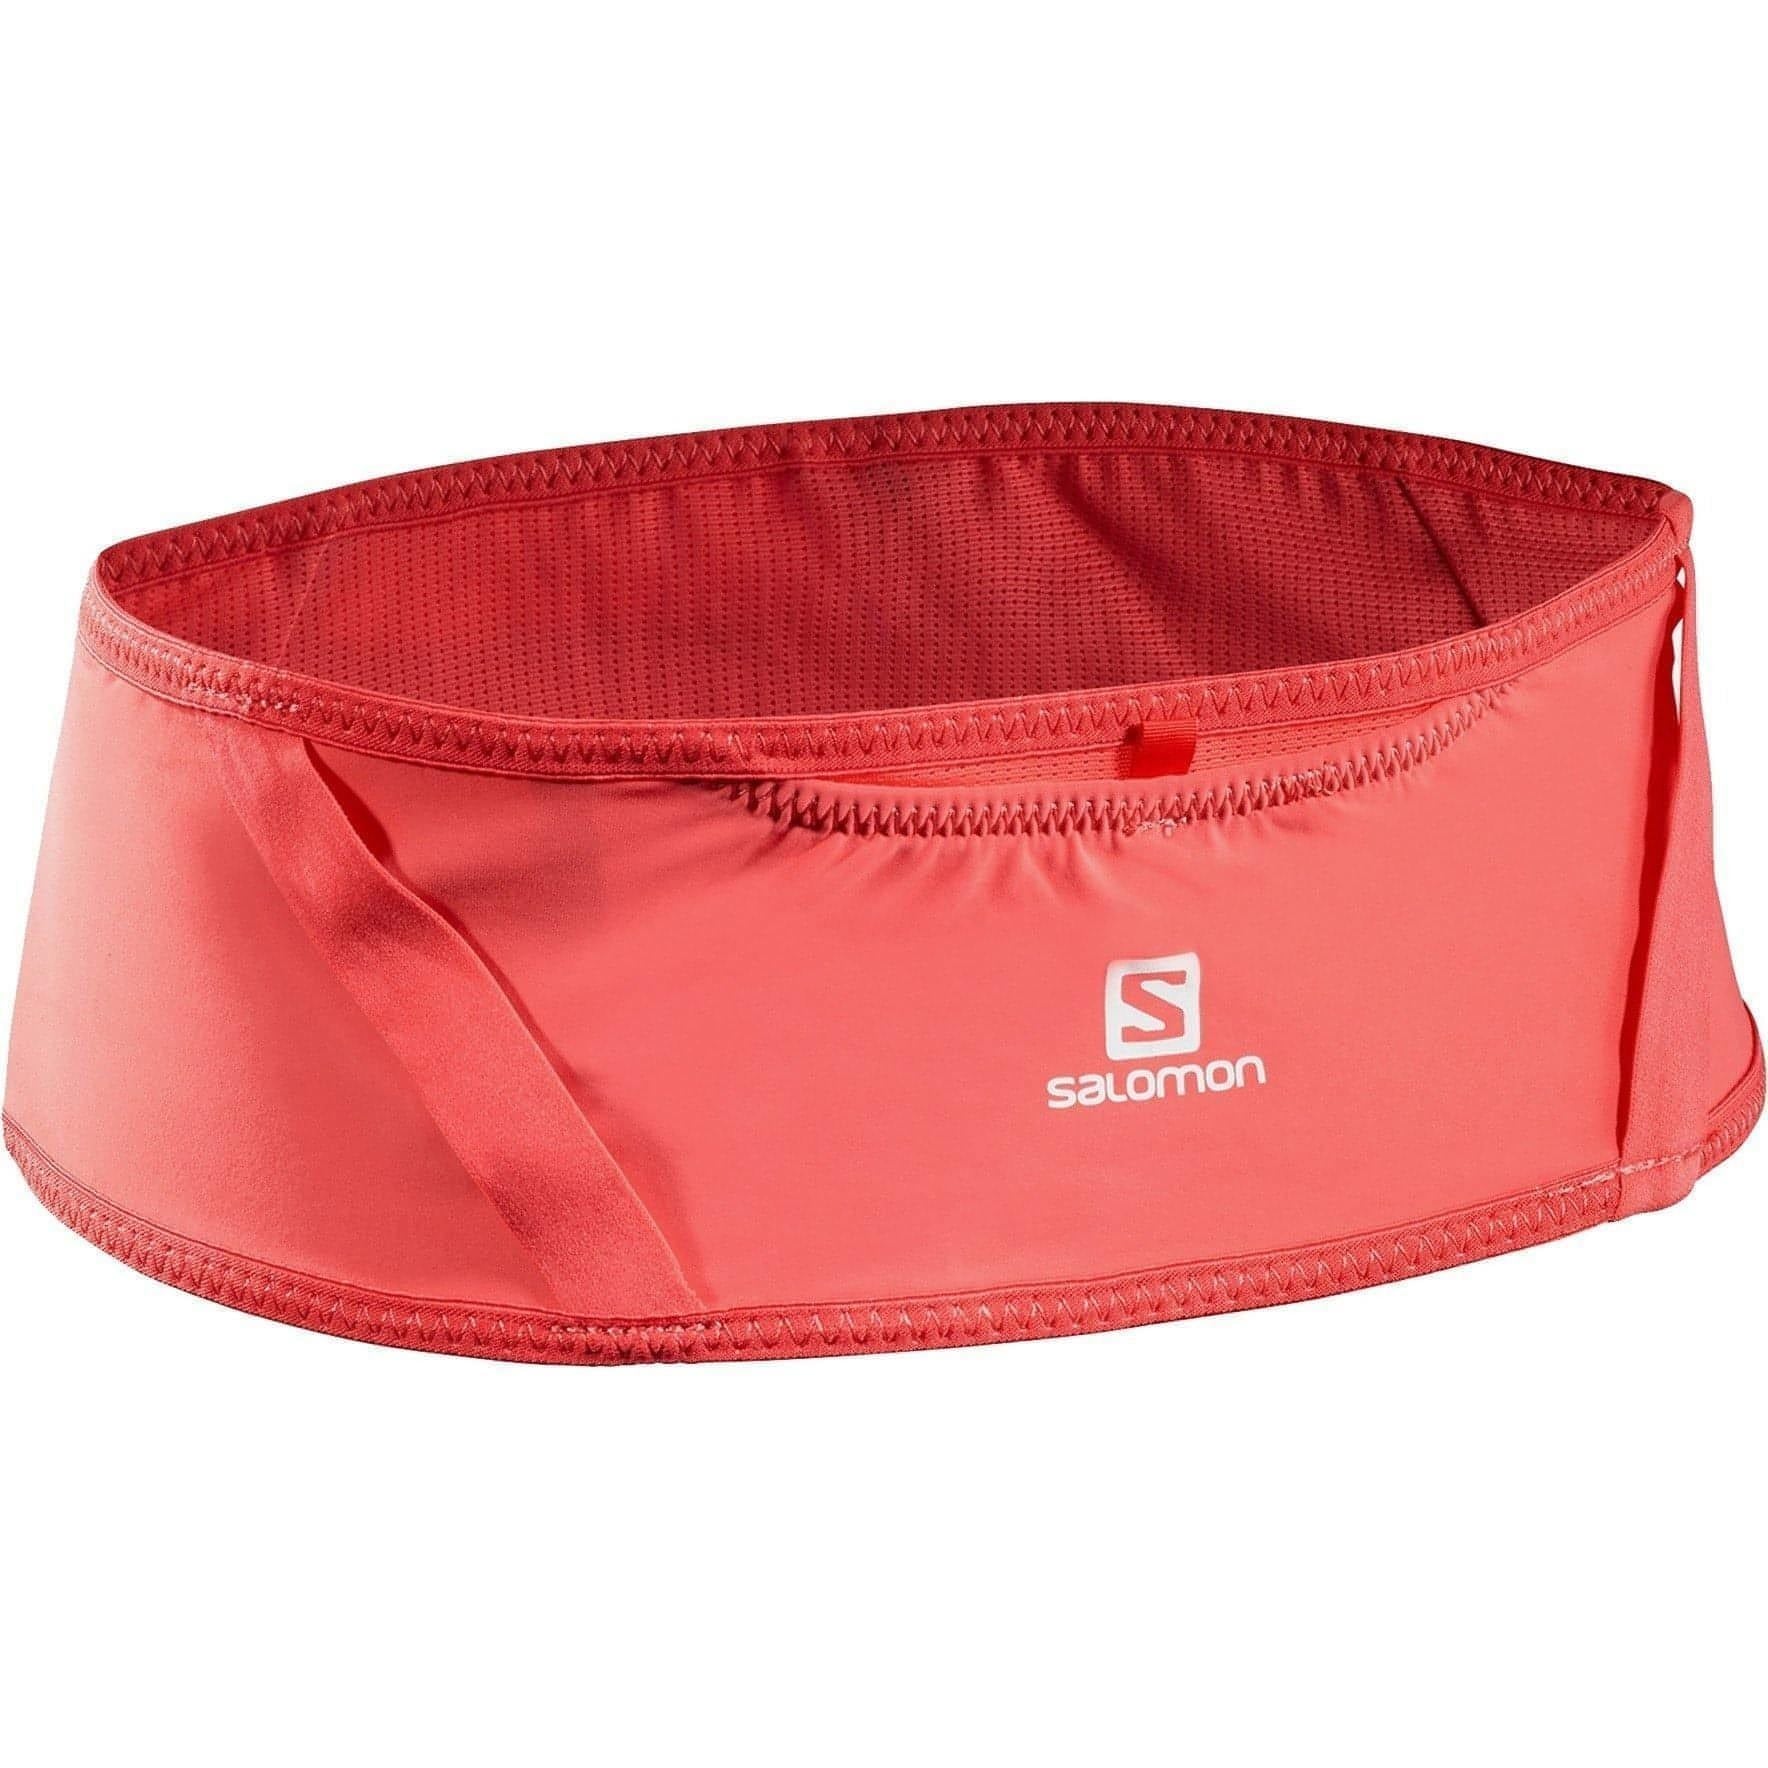 Salomon Pulse Running Belt - Red 193128189211 - Start Fitness